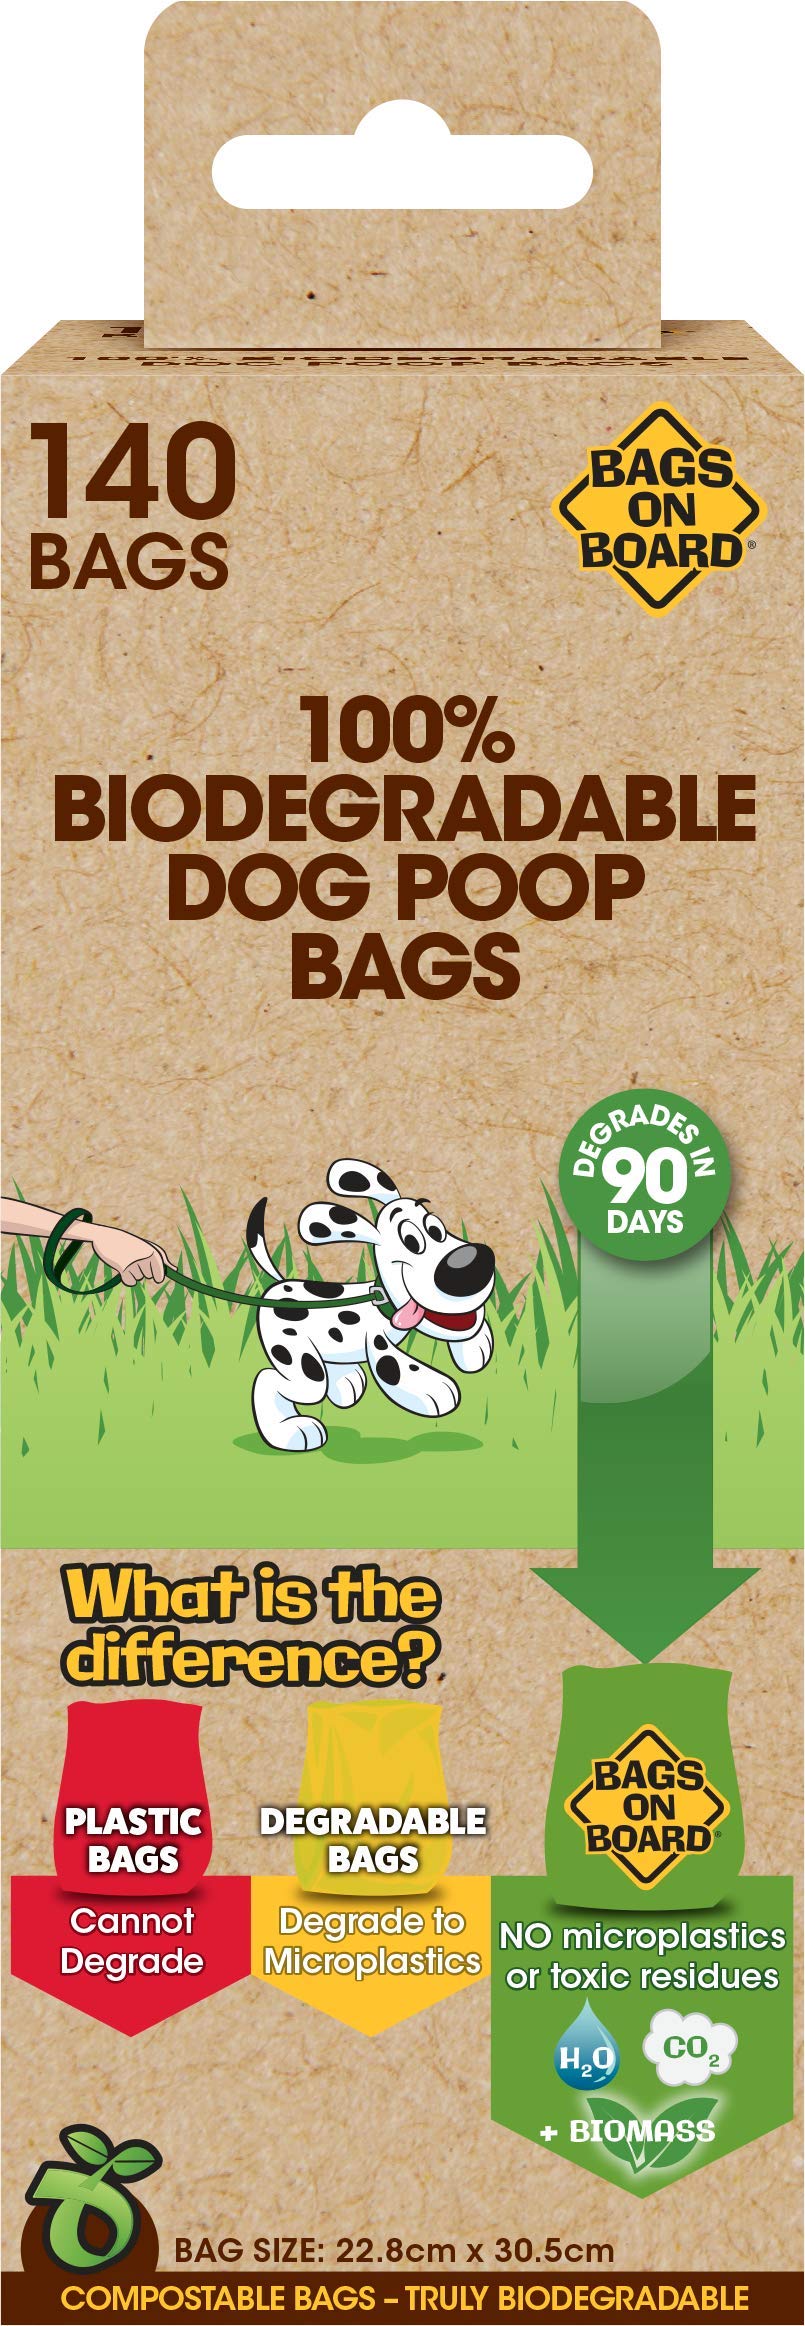 Bags on Board - 100% biologisch abbaubare und kompostierbare Hundekotbeutel - 140 Beutel